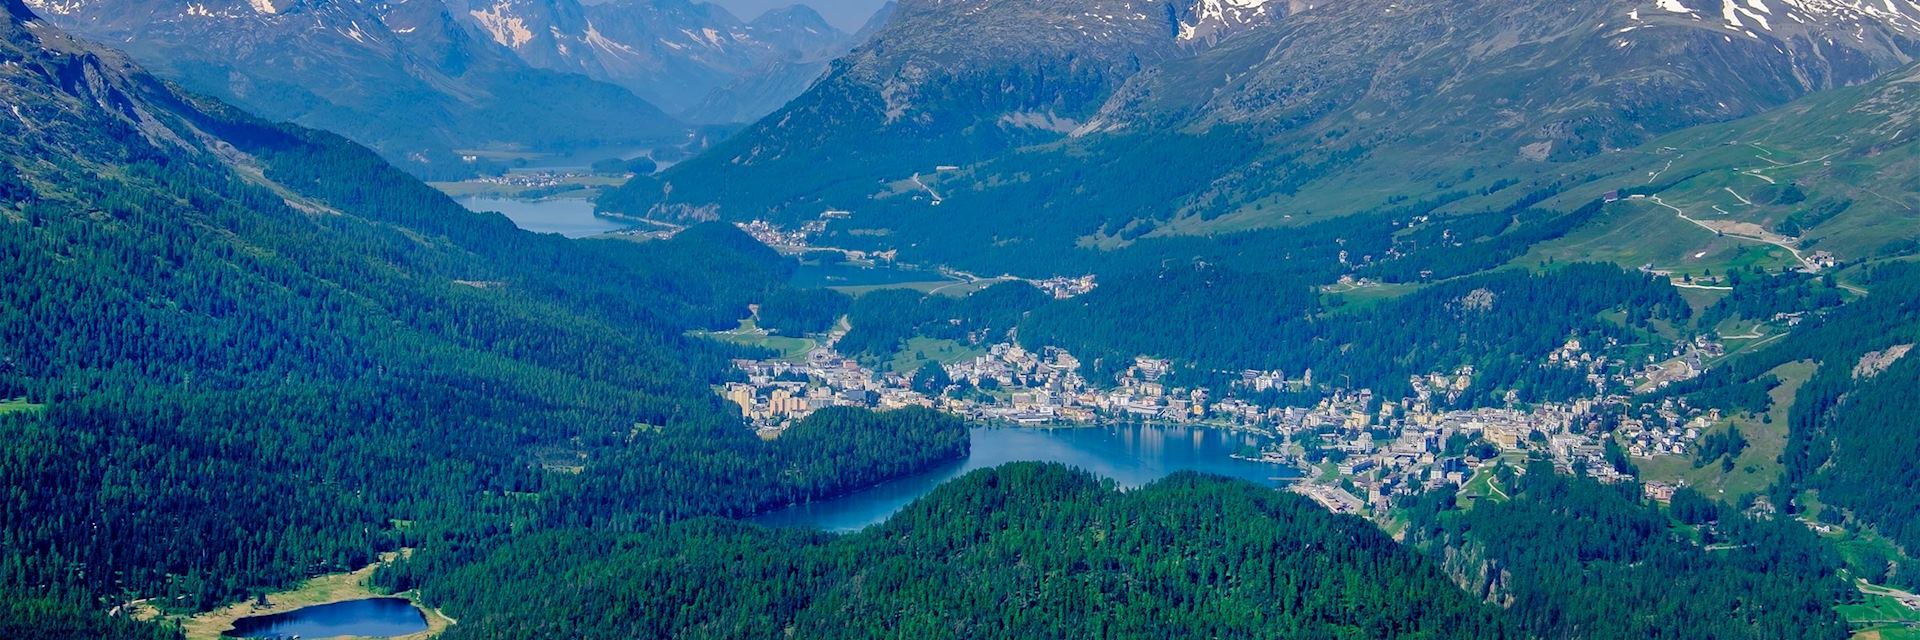 St. Moritz - Summer Fun in Switzerland